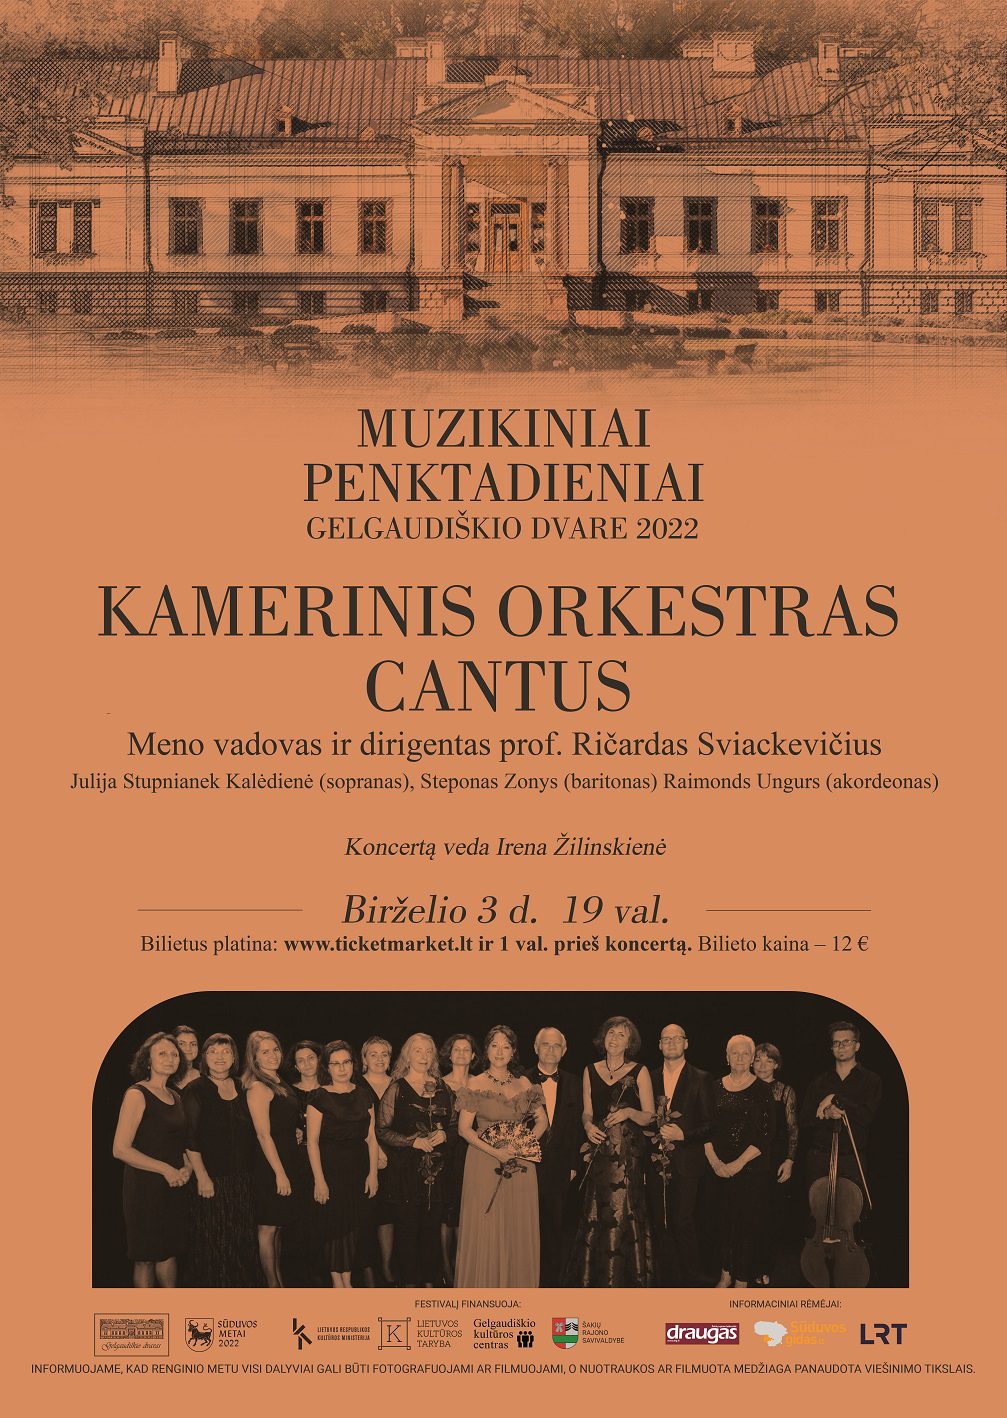 Kamerinio orkestro ,,Cantus" koncertas Gelgaudiškio dvare